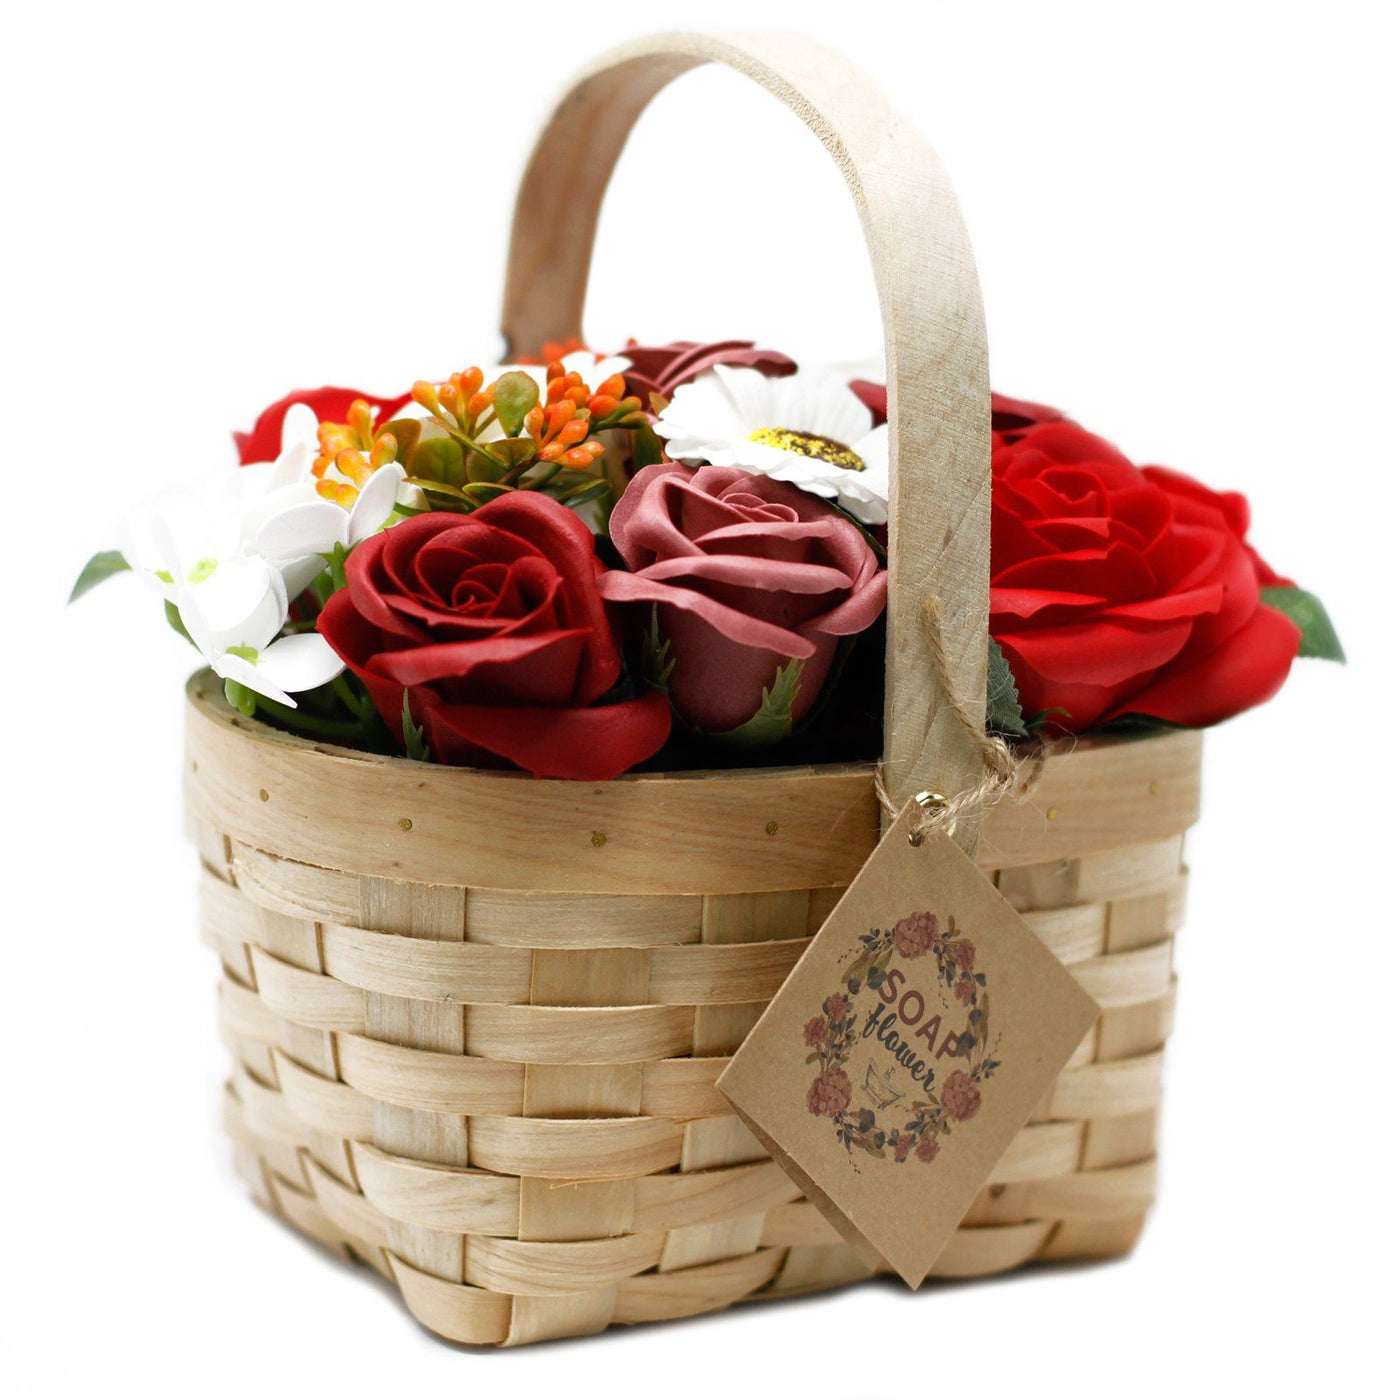 Large Luxury Red Body Soap Flower Gift Bouquet in Wicker Basket.